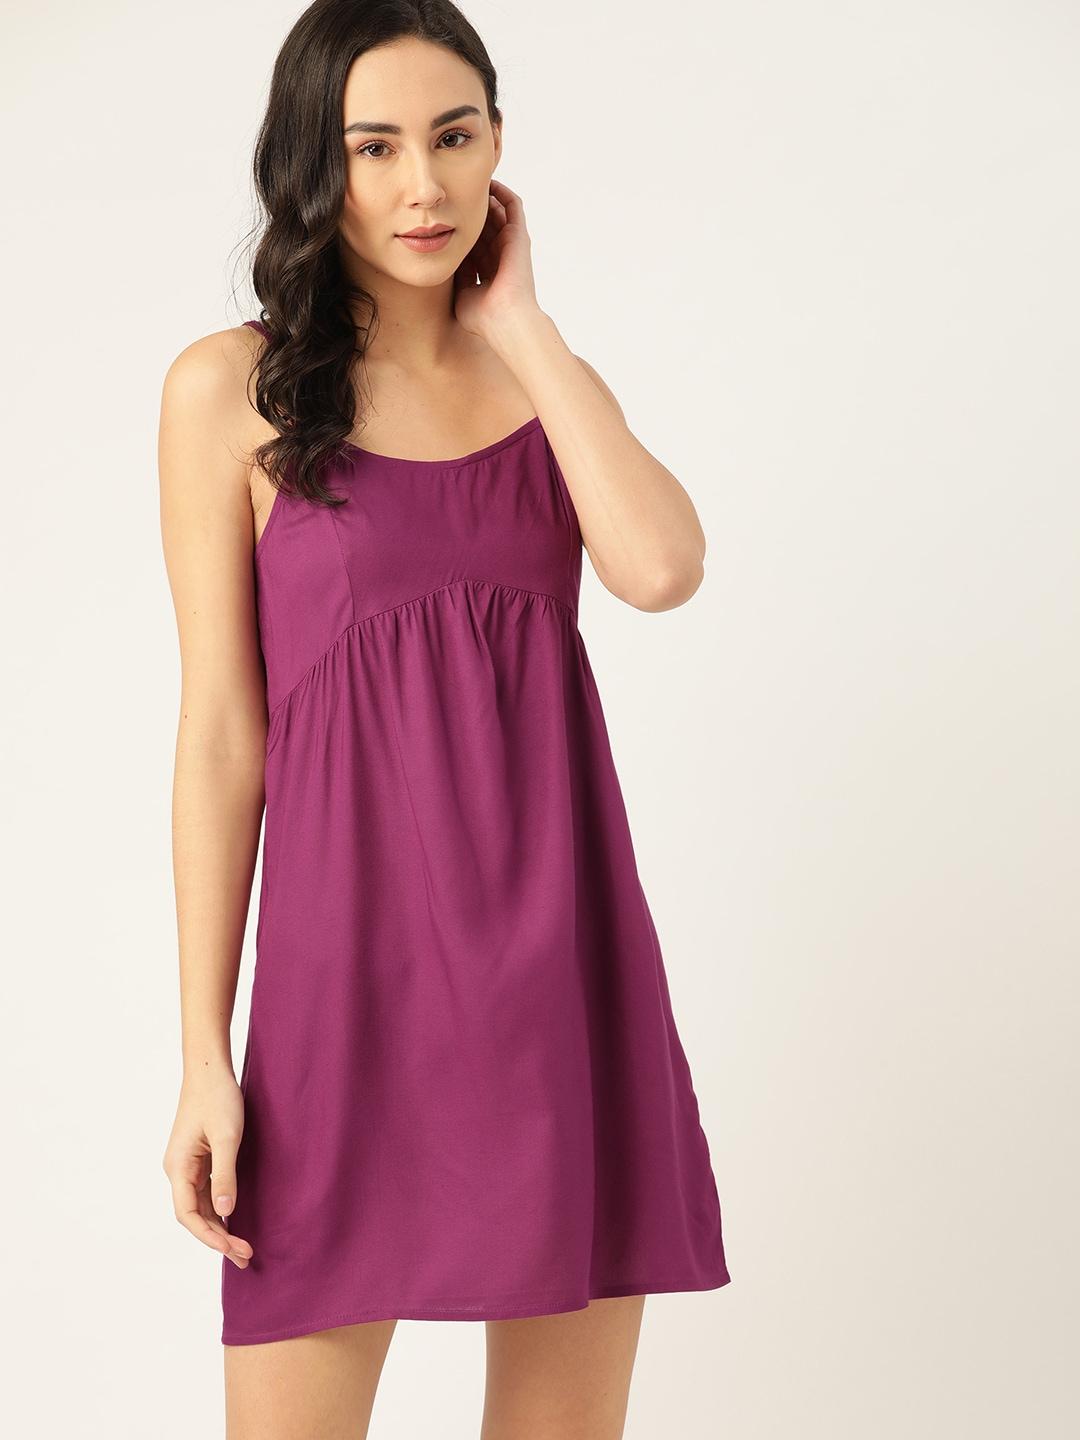 etc-women-purple-solid-a-line-nightdress